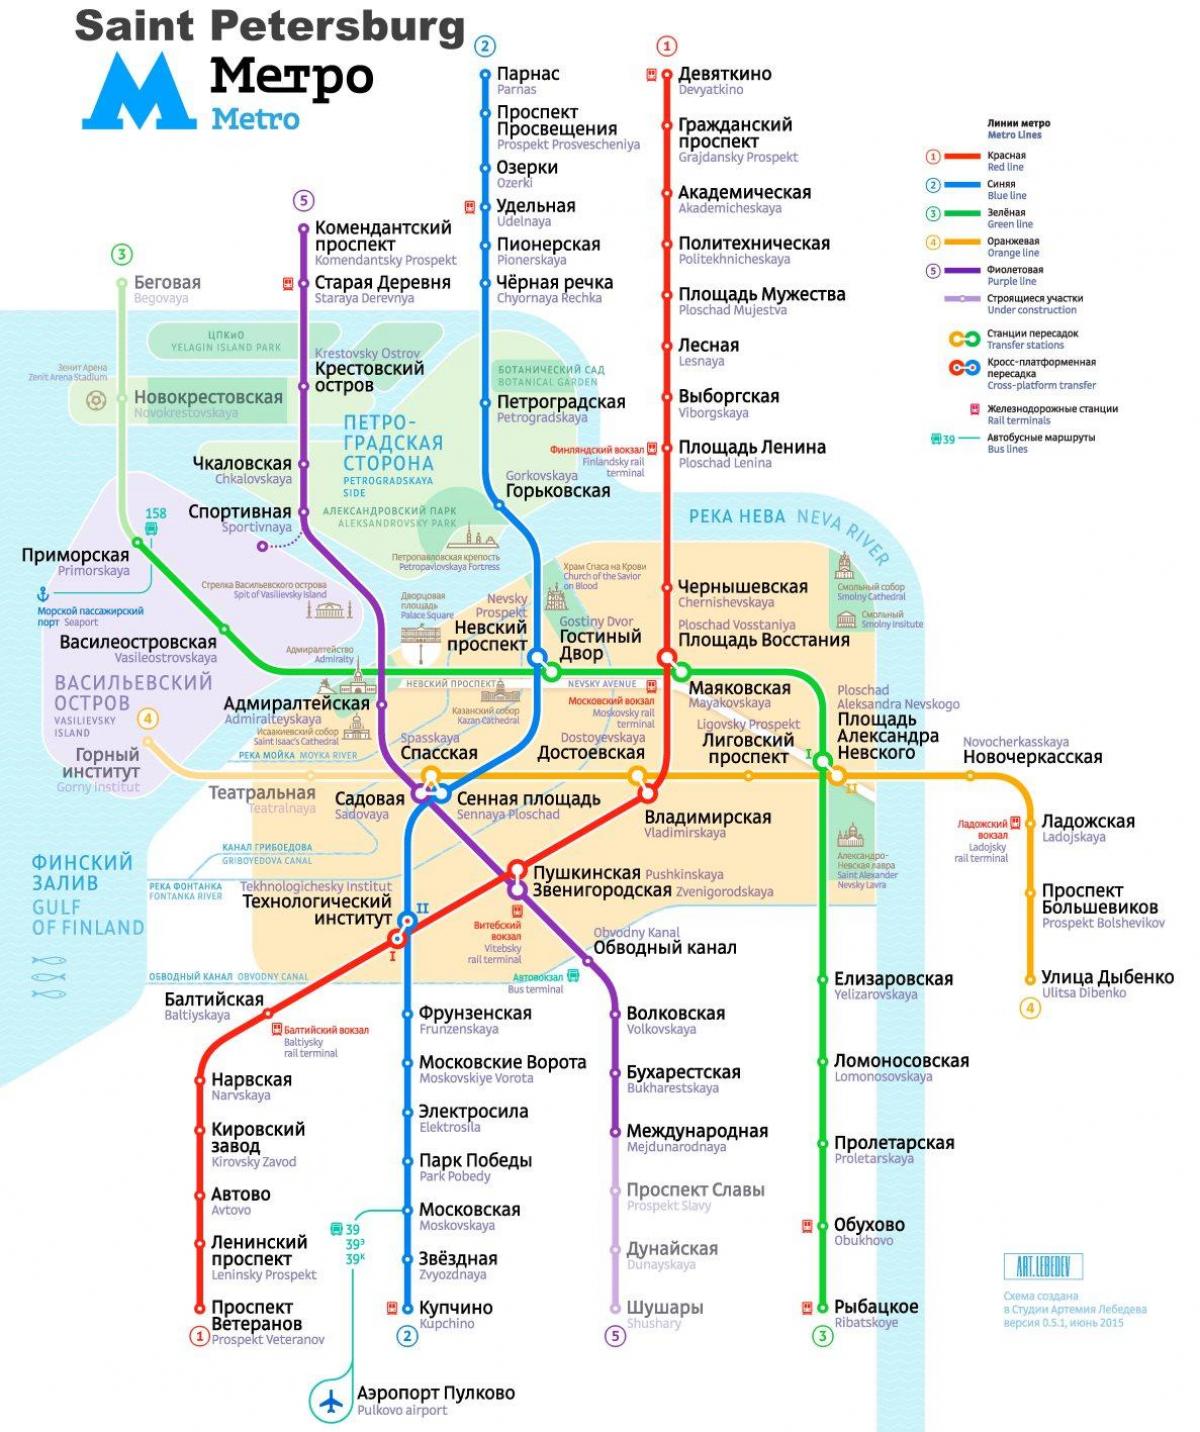 Mappa della metropolitana di San Pietroburgo